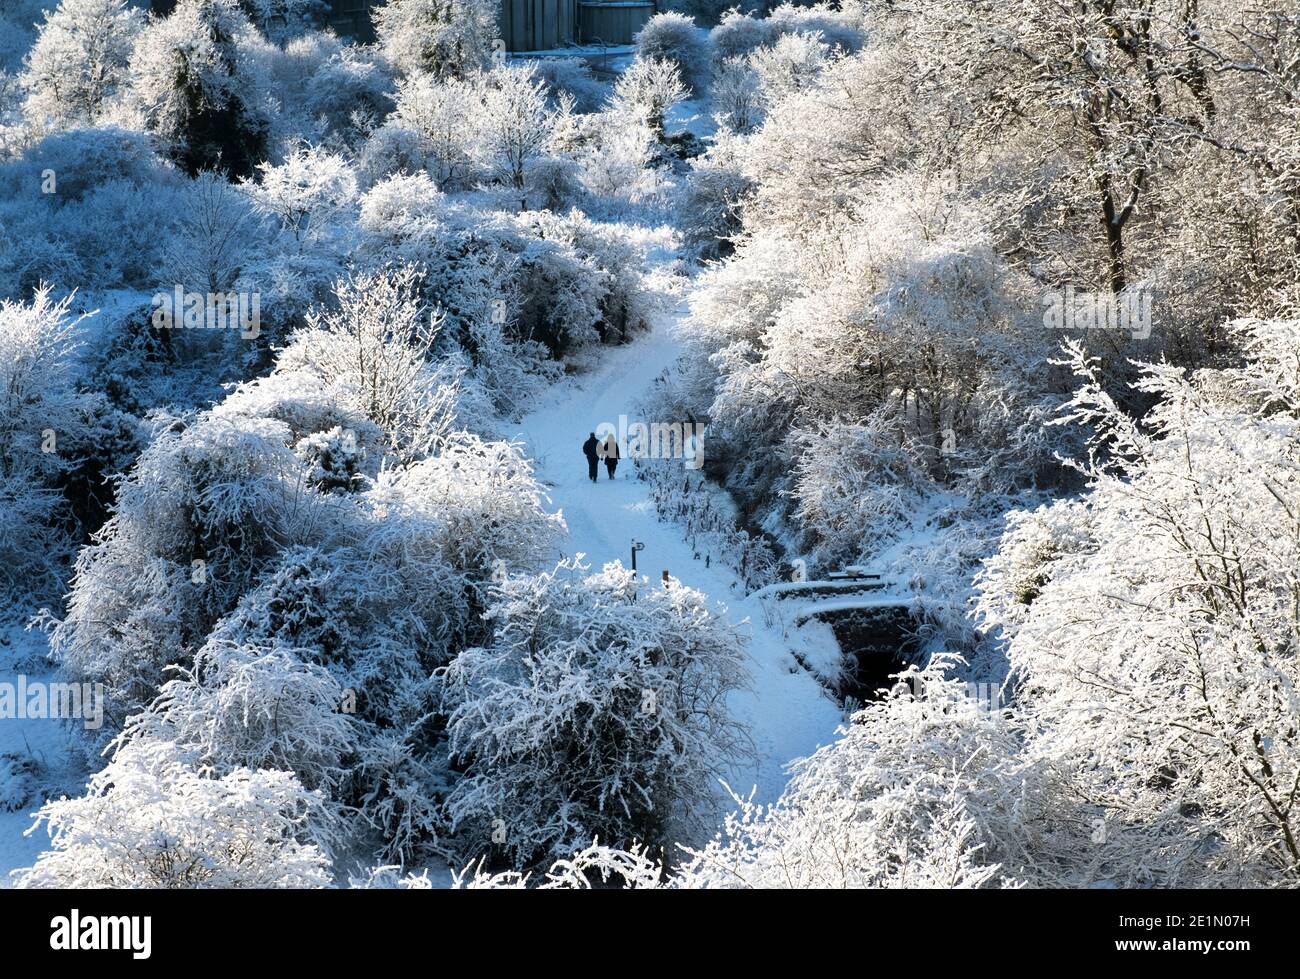 Météo, le 8 janvier 2021. Les gens marchent après une chute de neige fraîche dans le parc régional d'Almondell, West Lothian, Écosse, Royaume-Uni. . Crédit : Ian Rutherford/Alay Live News. Banque D'Images